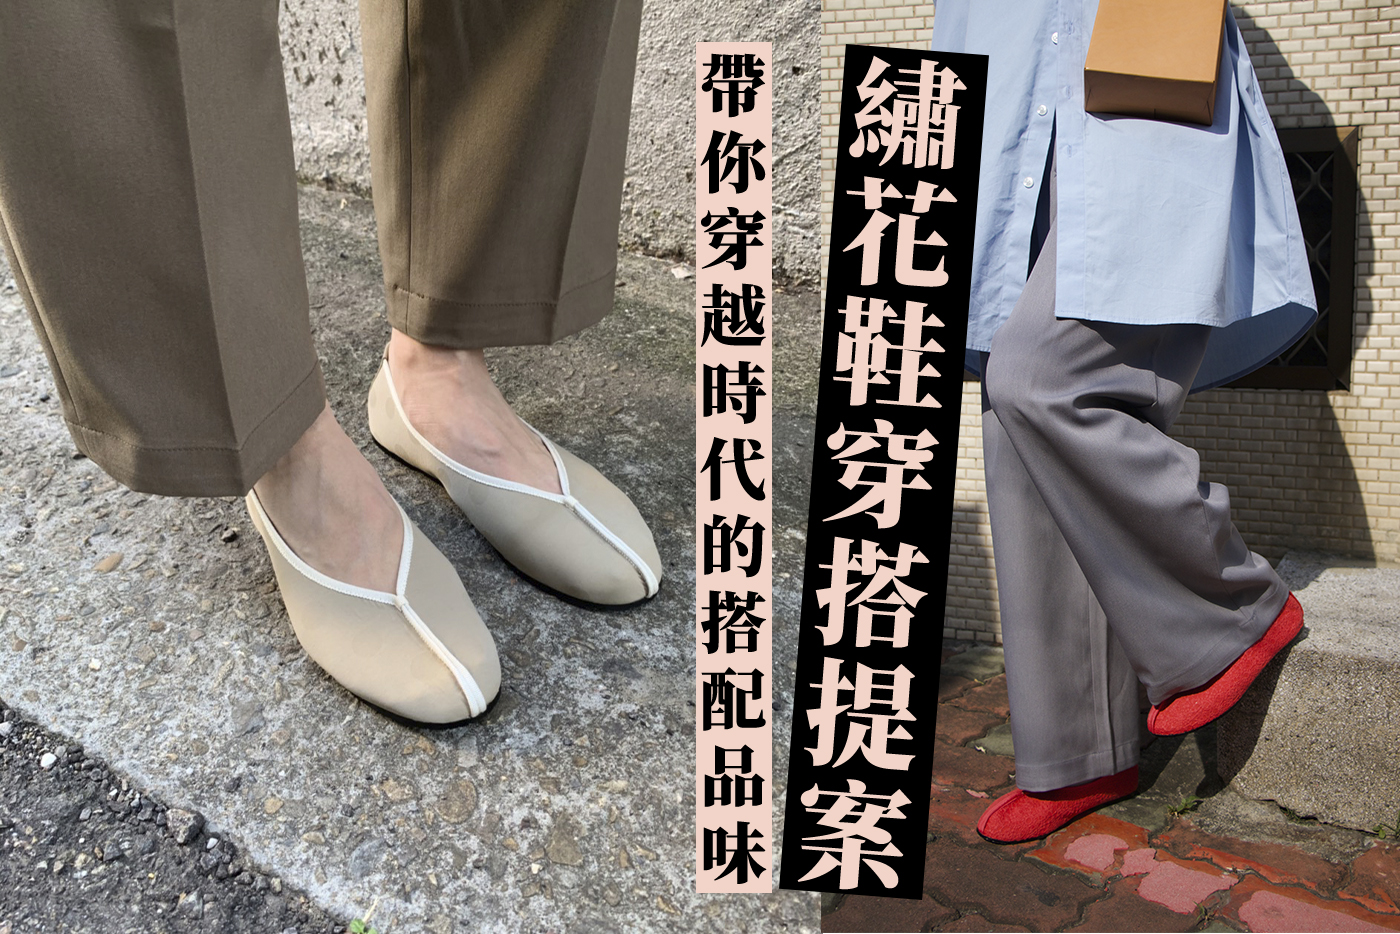 繡花鞋穿搭,平底鞋穿搭,小花園,繡花鞋,合掌鞋,台灣傳統,娃娃鞋,平底鞋,Embroider Shoes